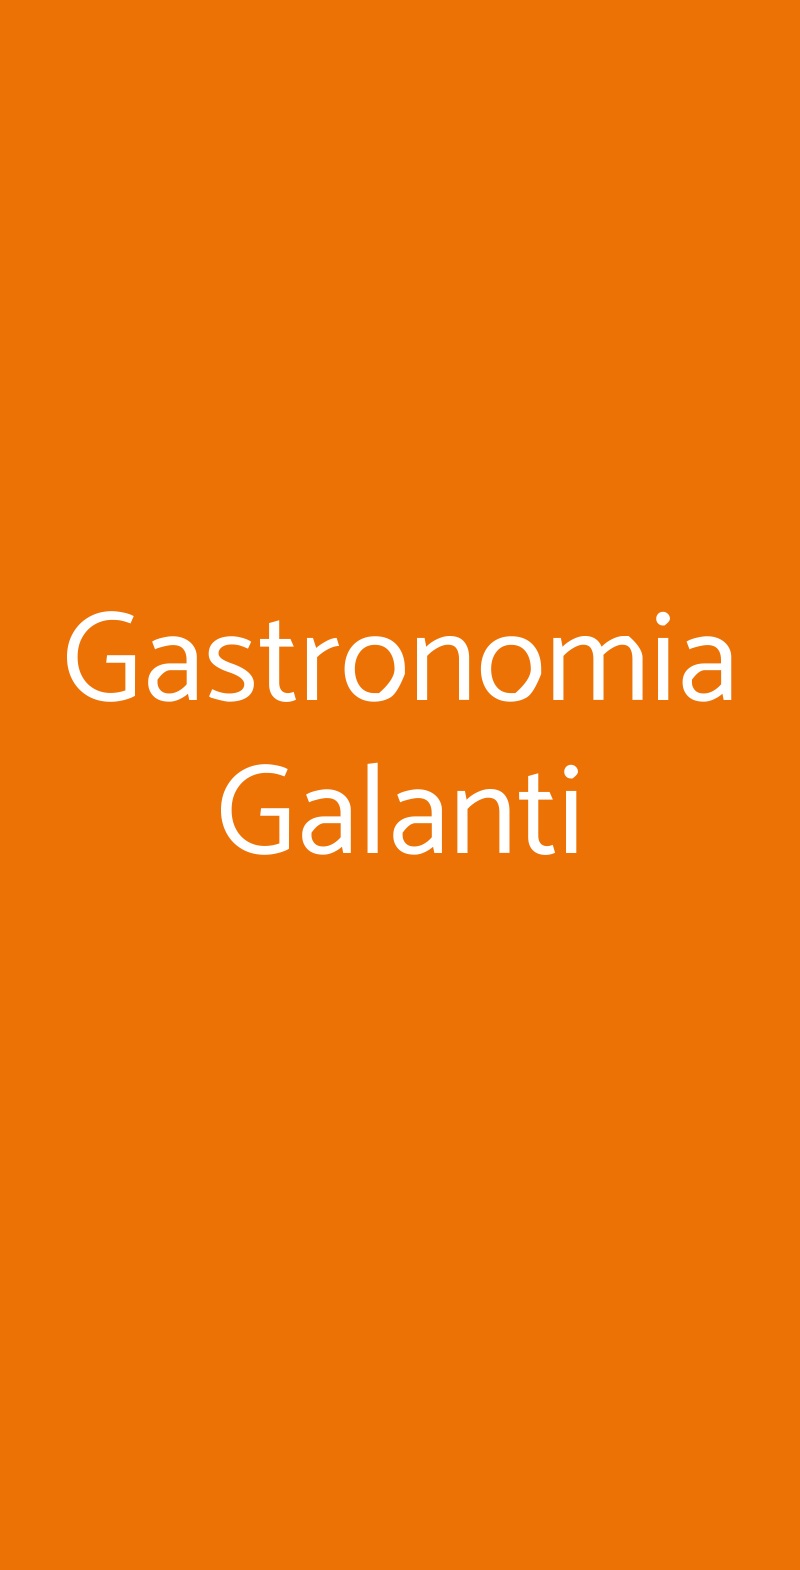 Gastronomia Galanti Firenze menù 1 pagina